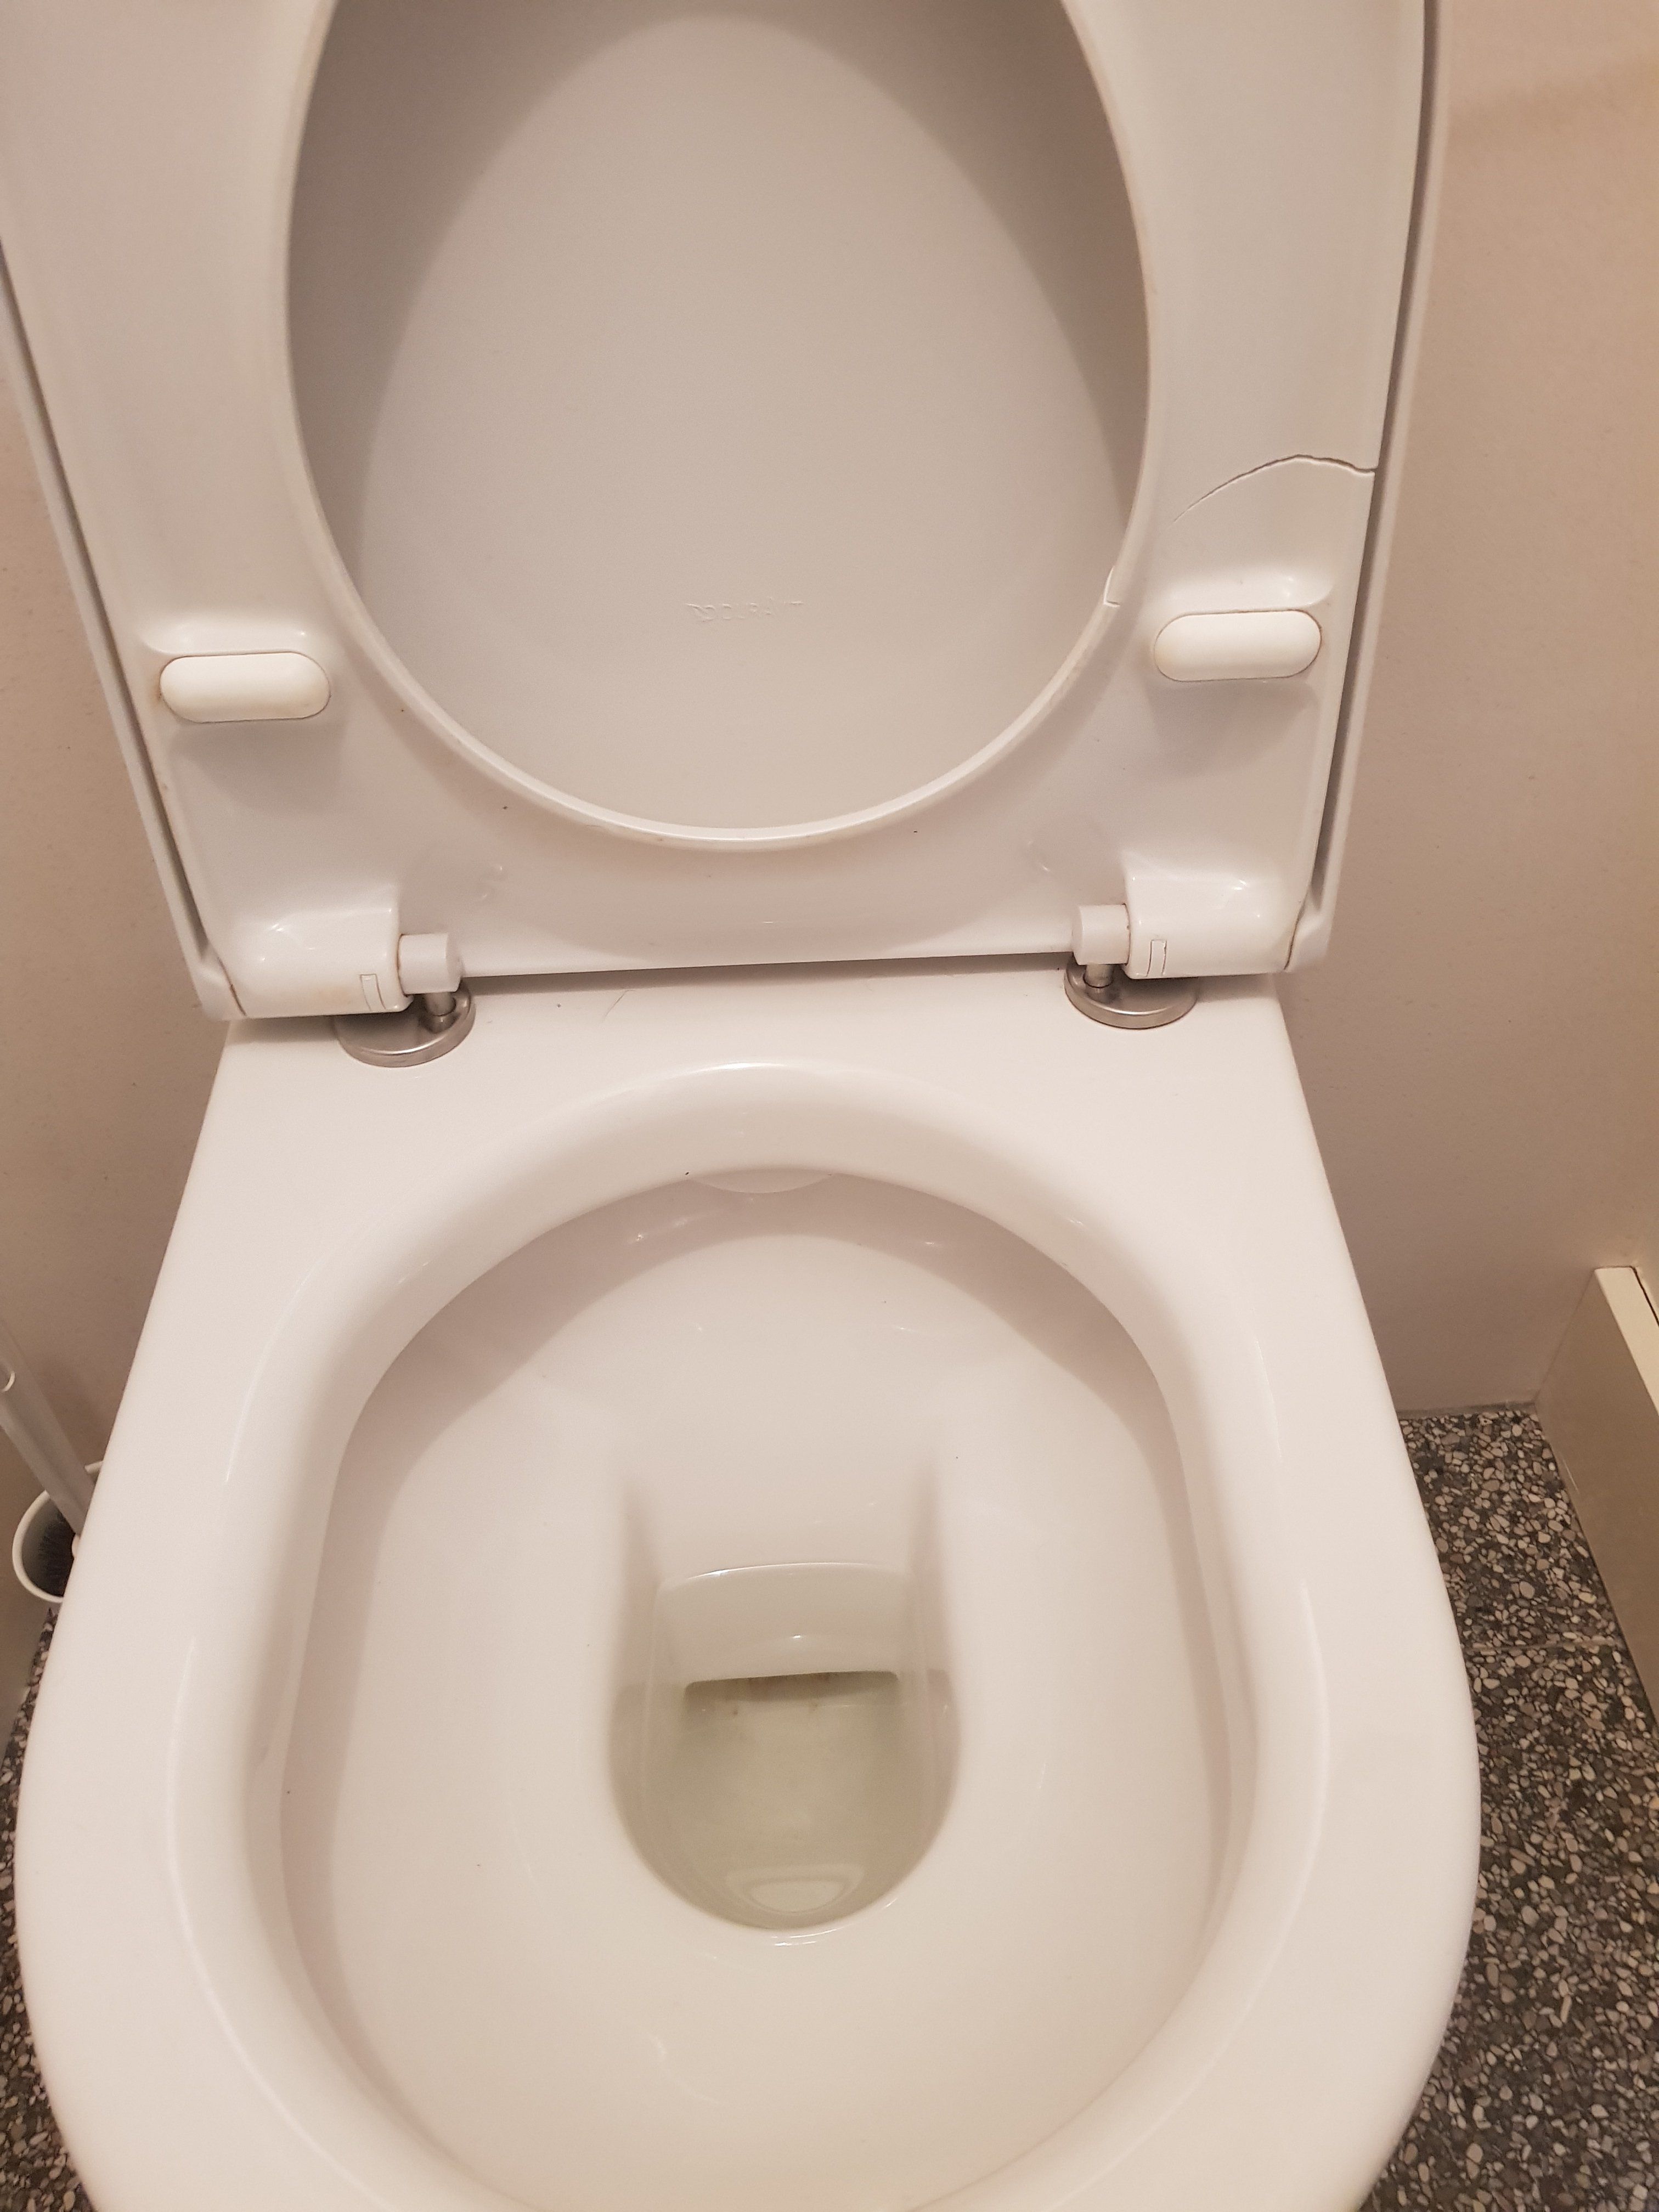 Blind Legende haai Toilet repareren: Duravit WC bril vervangen - Werkspot